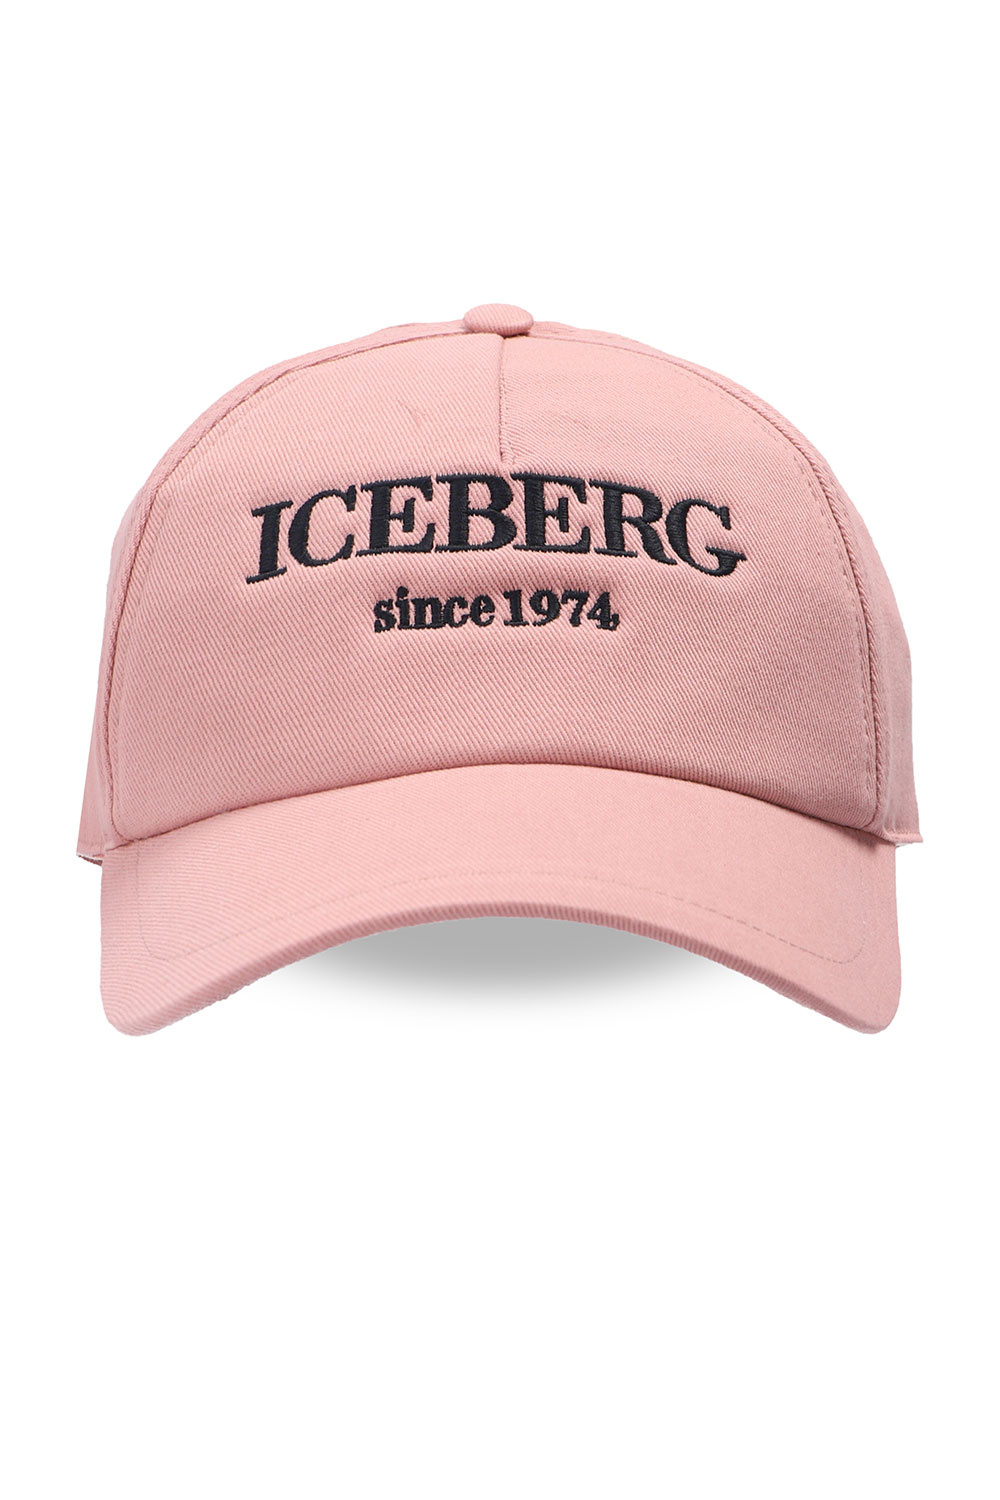 Iceberg Branded baseball cap